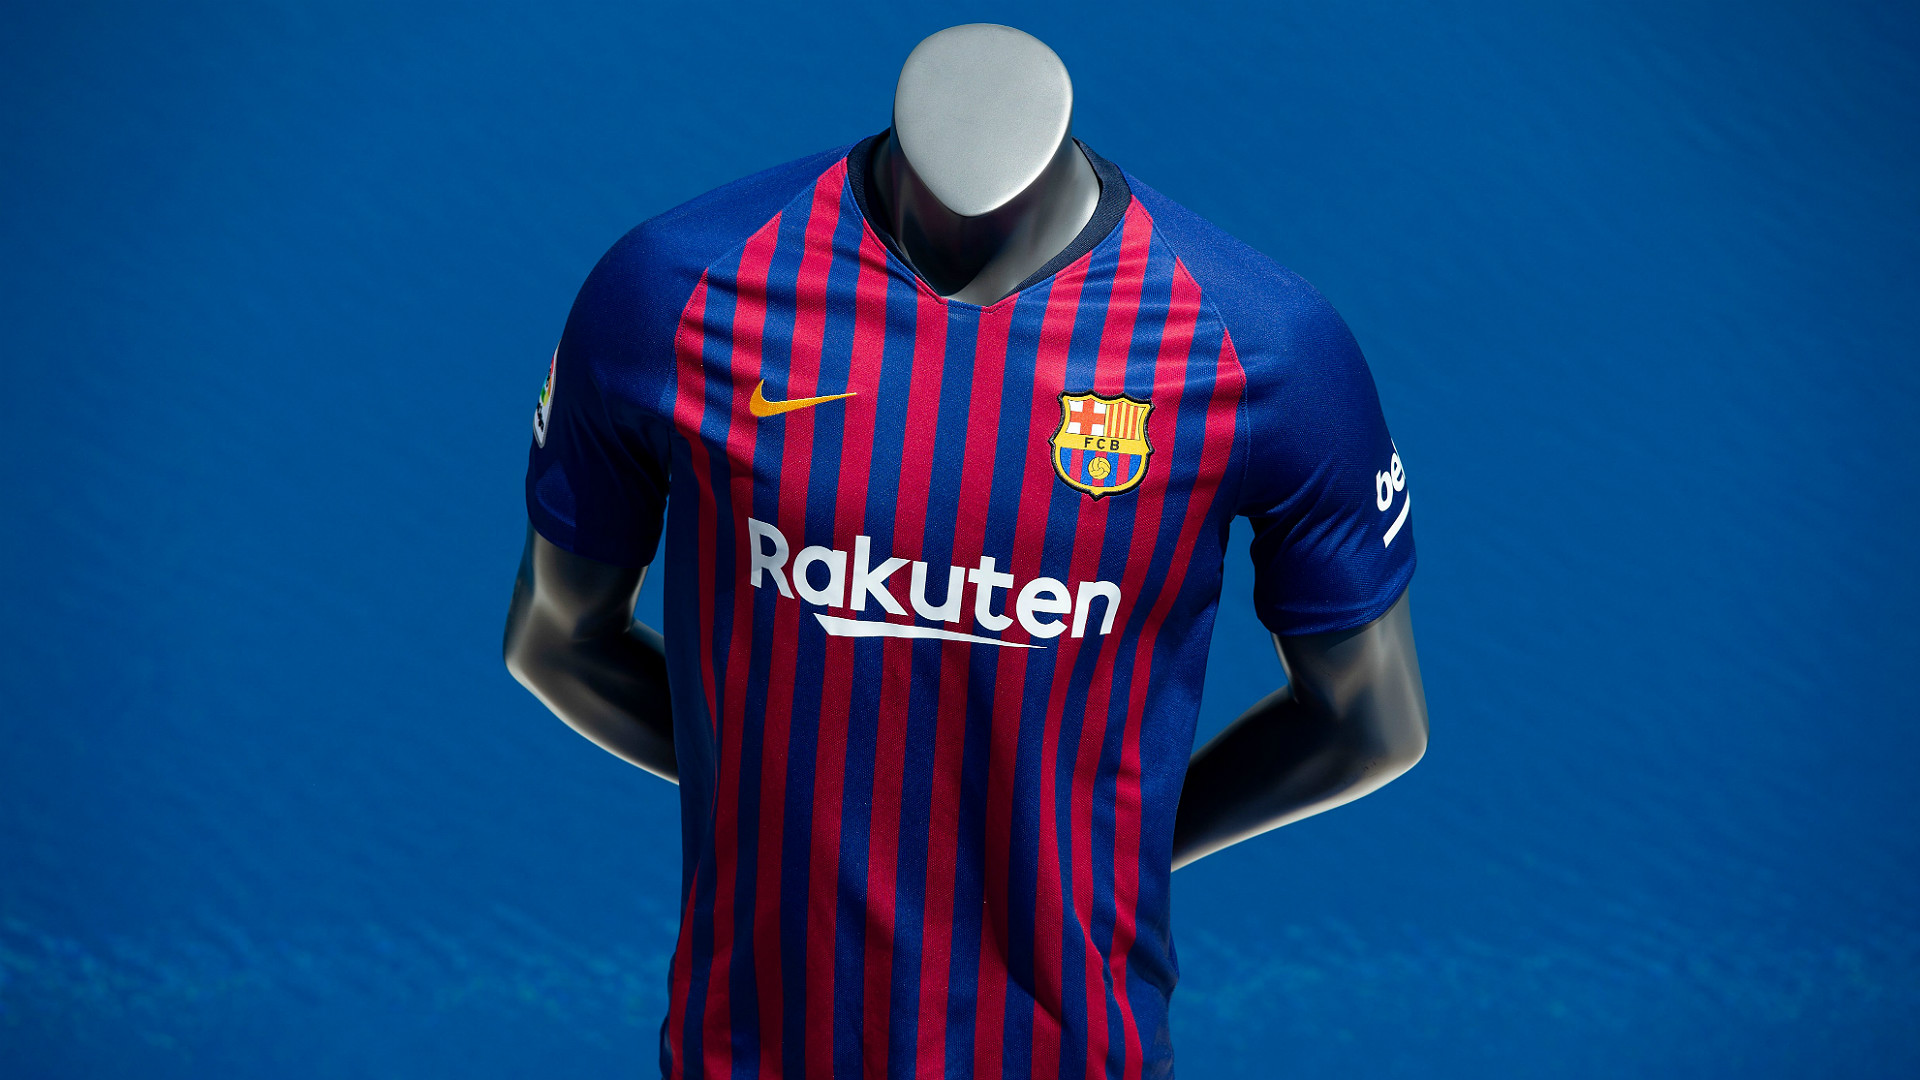 La Camiseta Del Barcelona D Nde Prar Cu Nto Cuesta